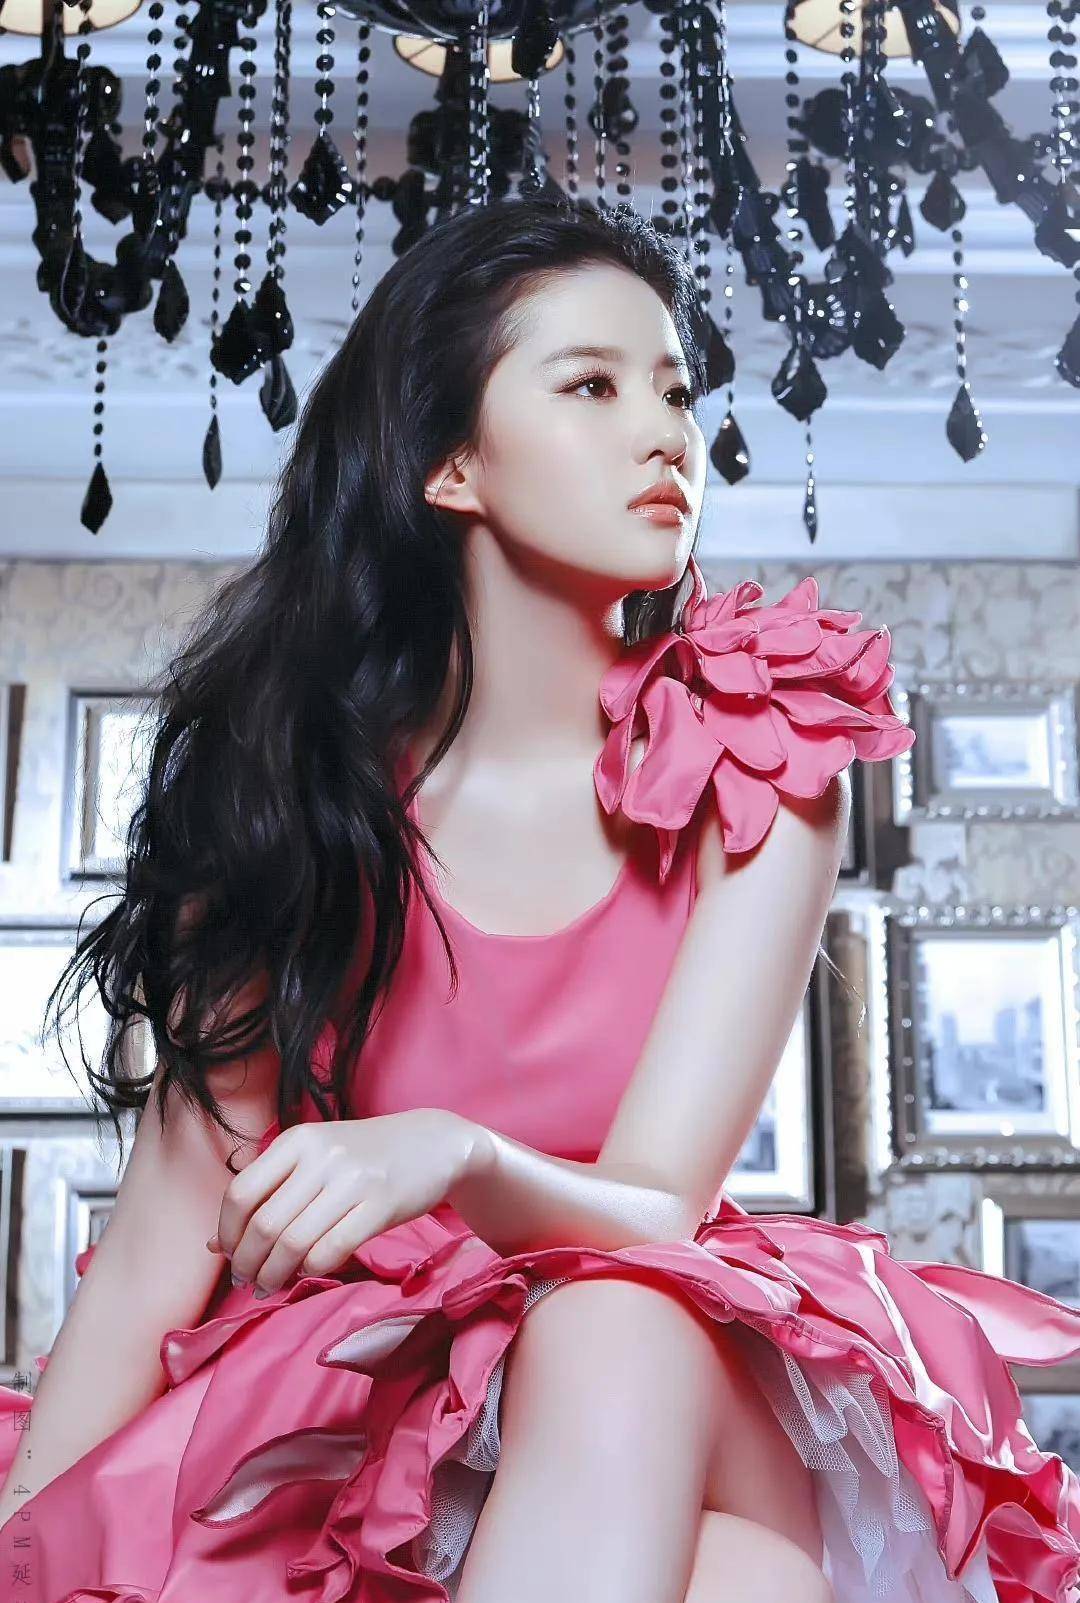 刘亦菲的顶级美貌,花苞裙配漫画腿和天仙脸,没人比她更美了吧?